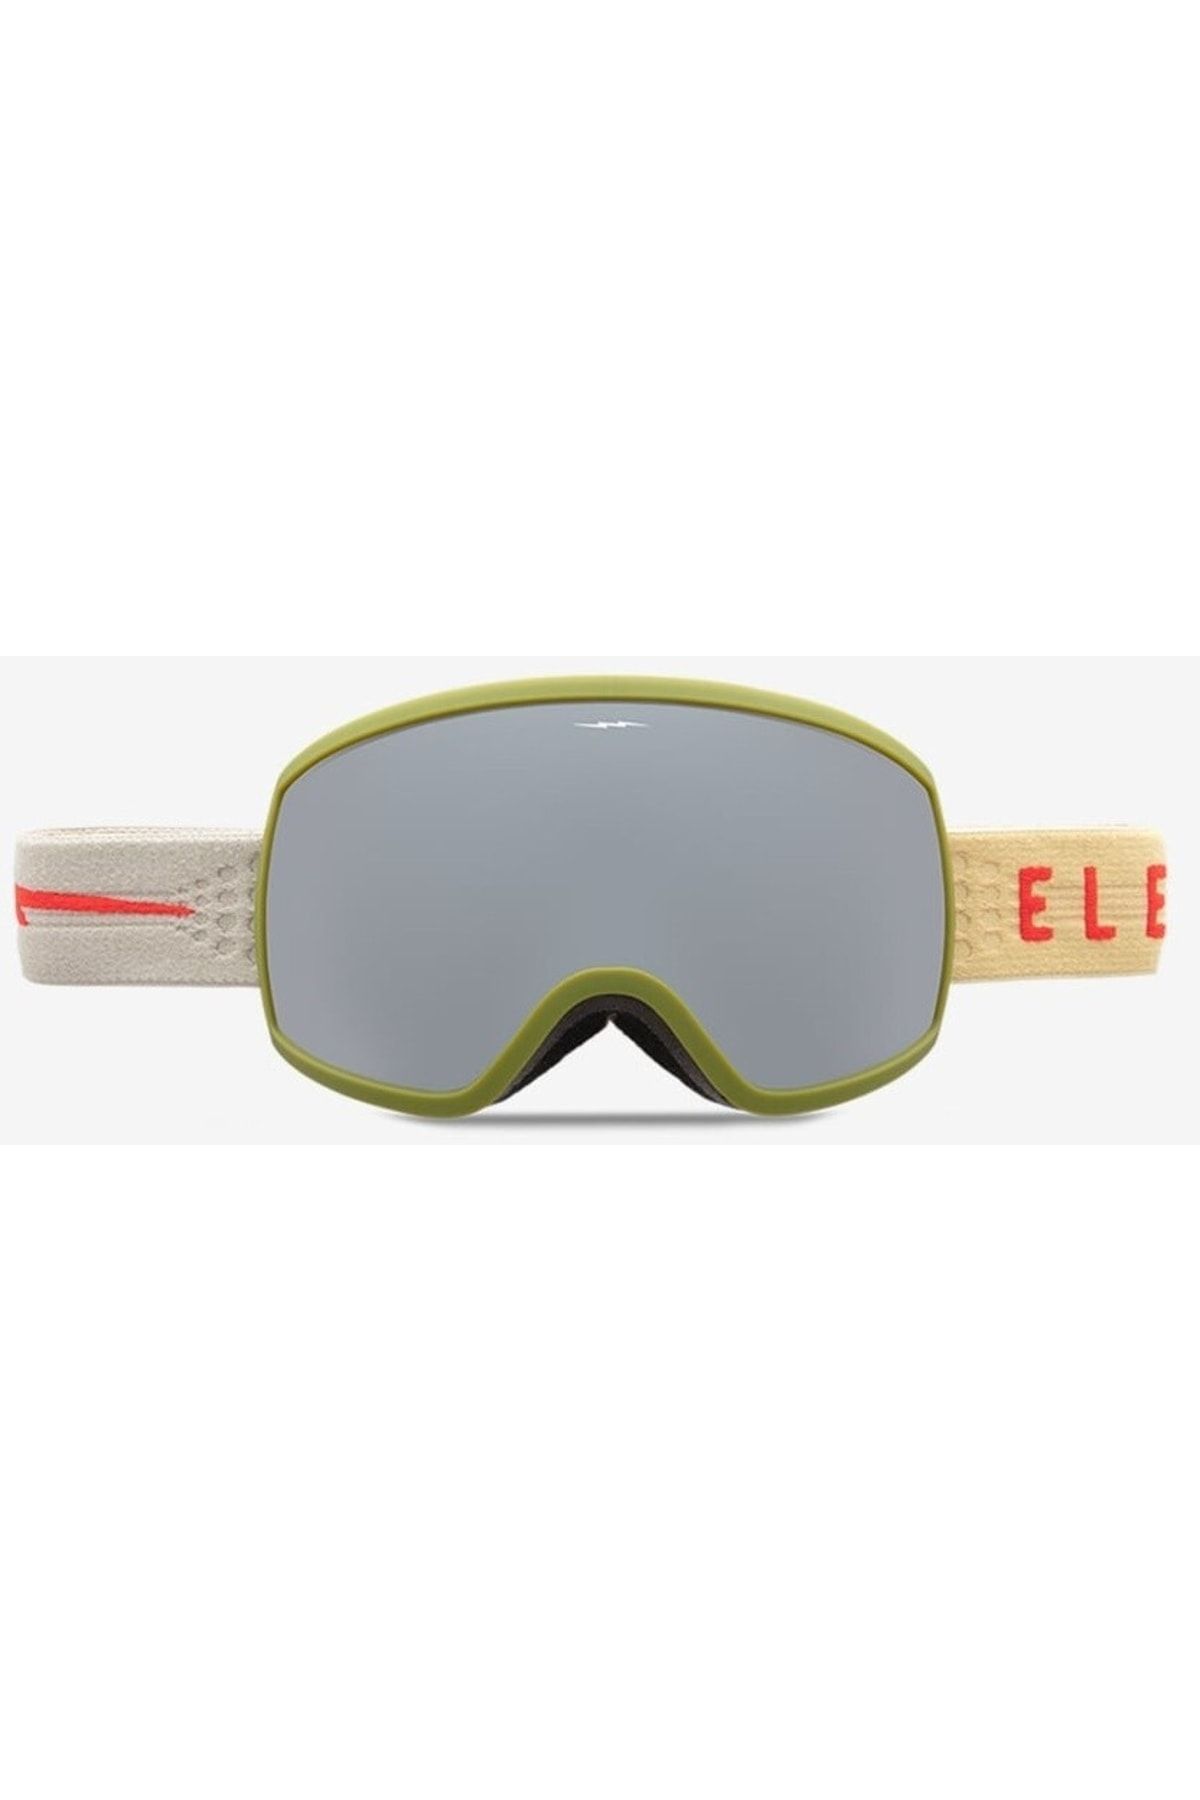 Electric Eg2-t Matte Evergrn Fusi Kar Gözlüğü